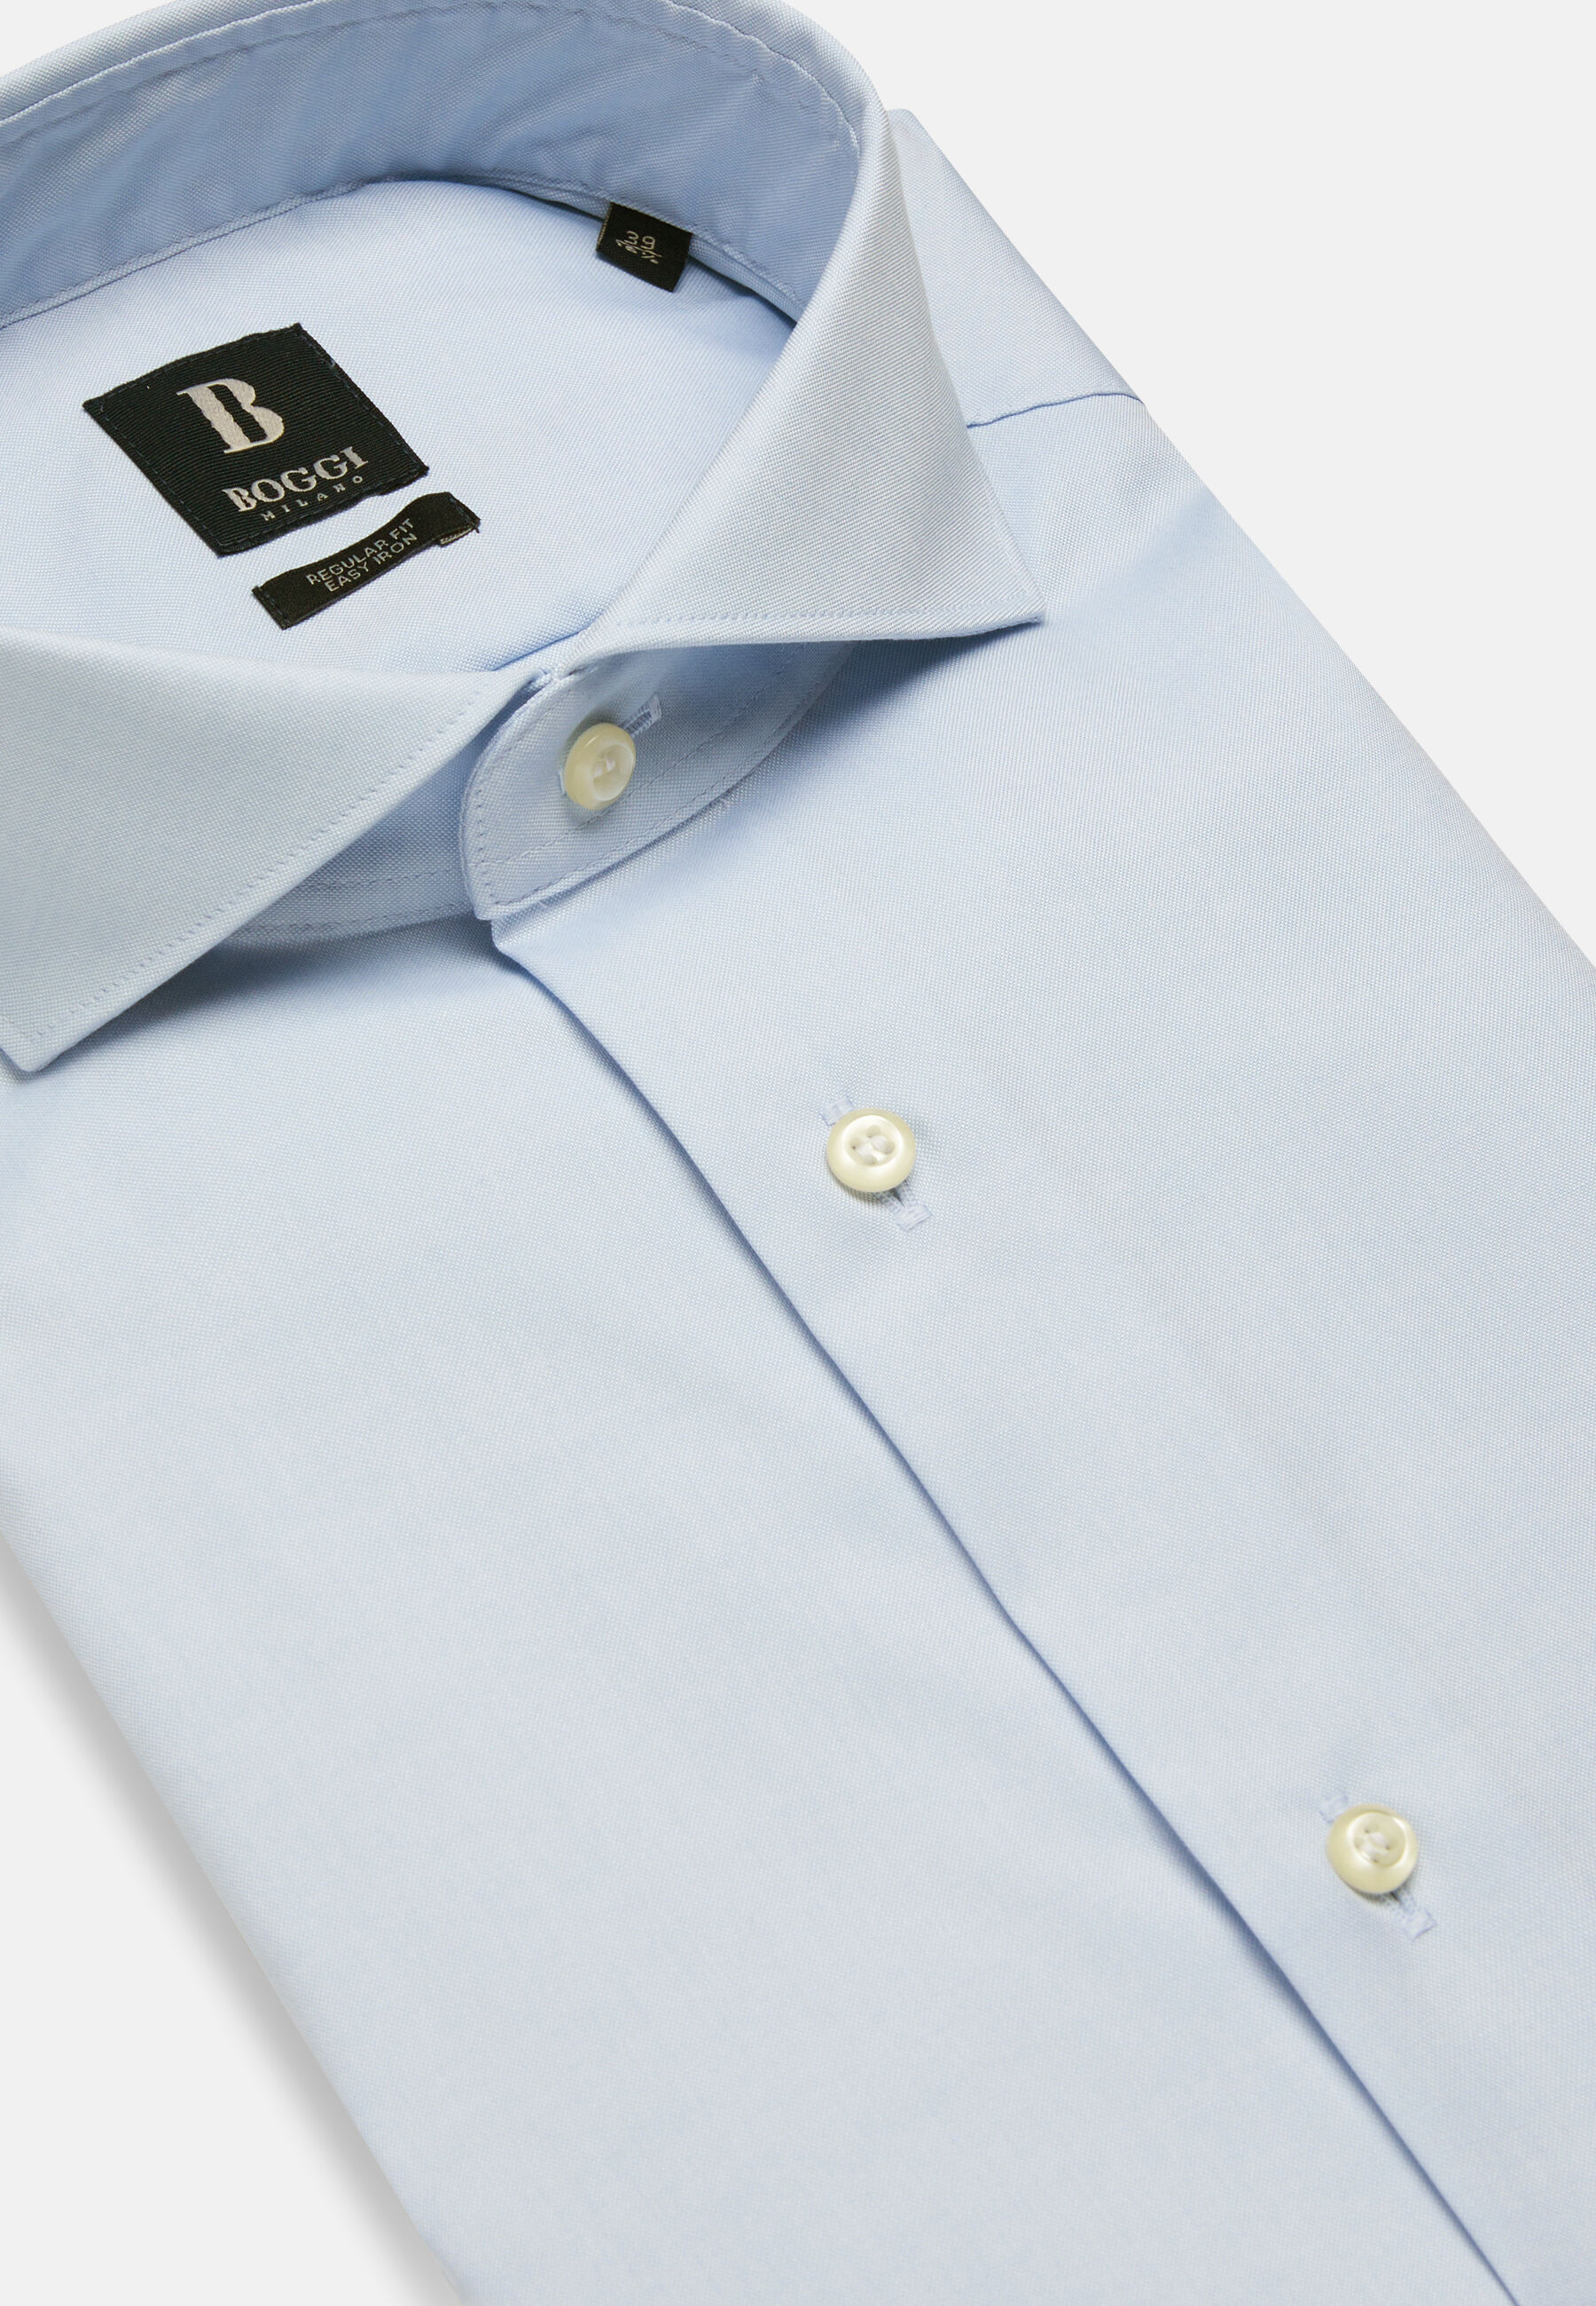 Camisa azul en pin point de algodón regular fit